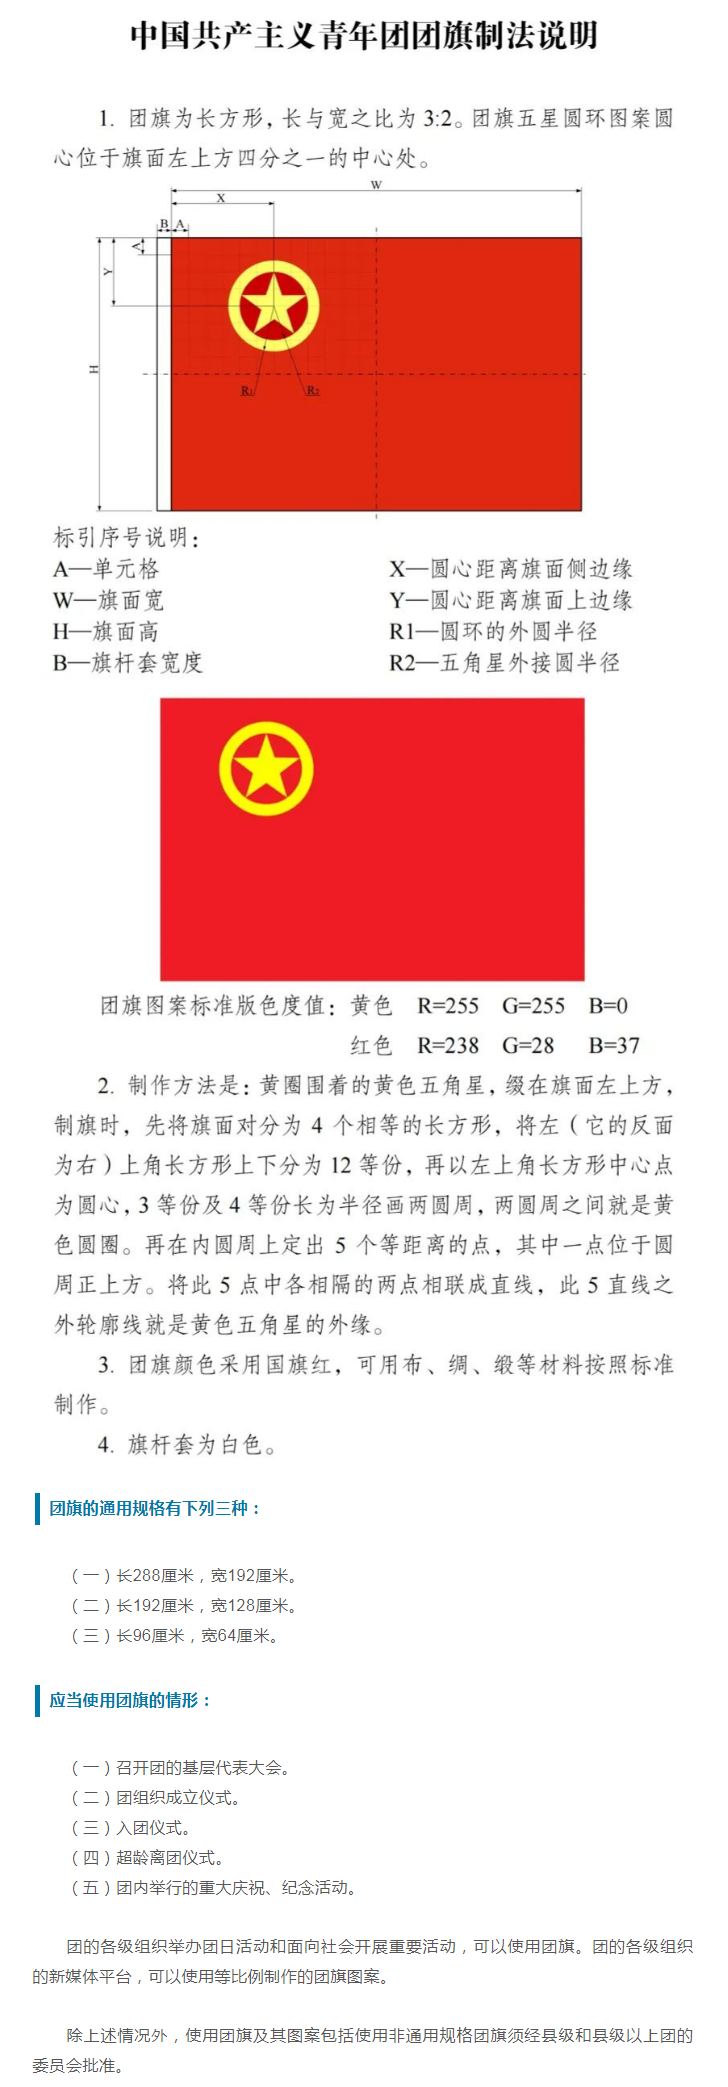 中国共产主义青年团团旗、团徽国家标准发布副本.png